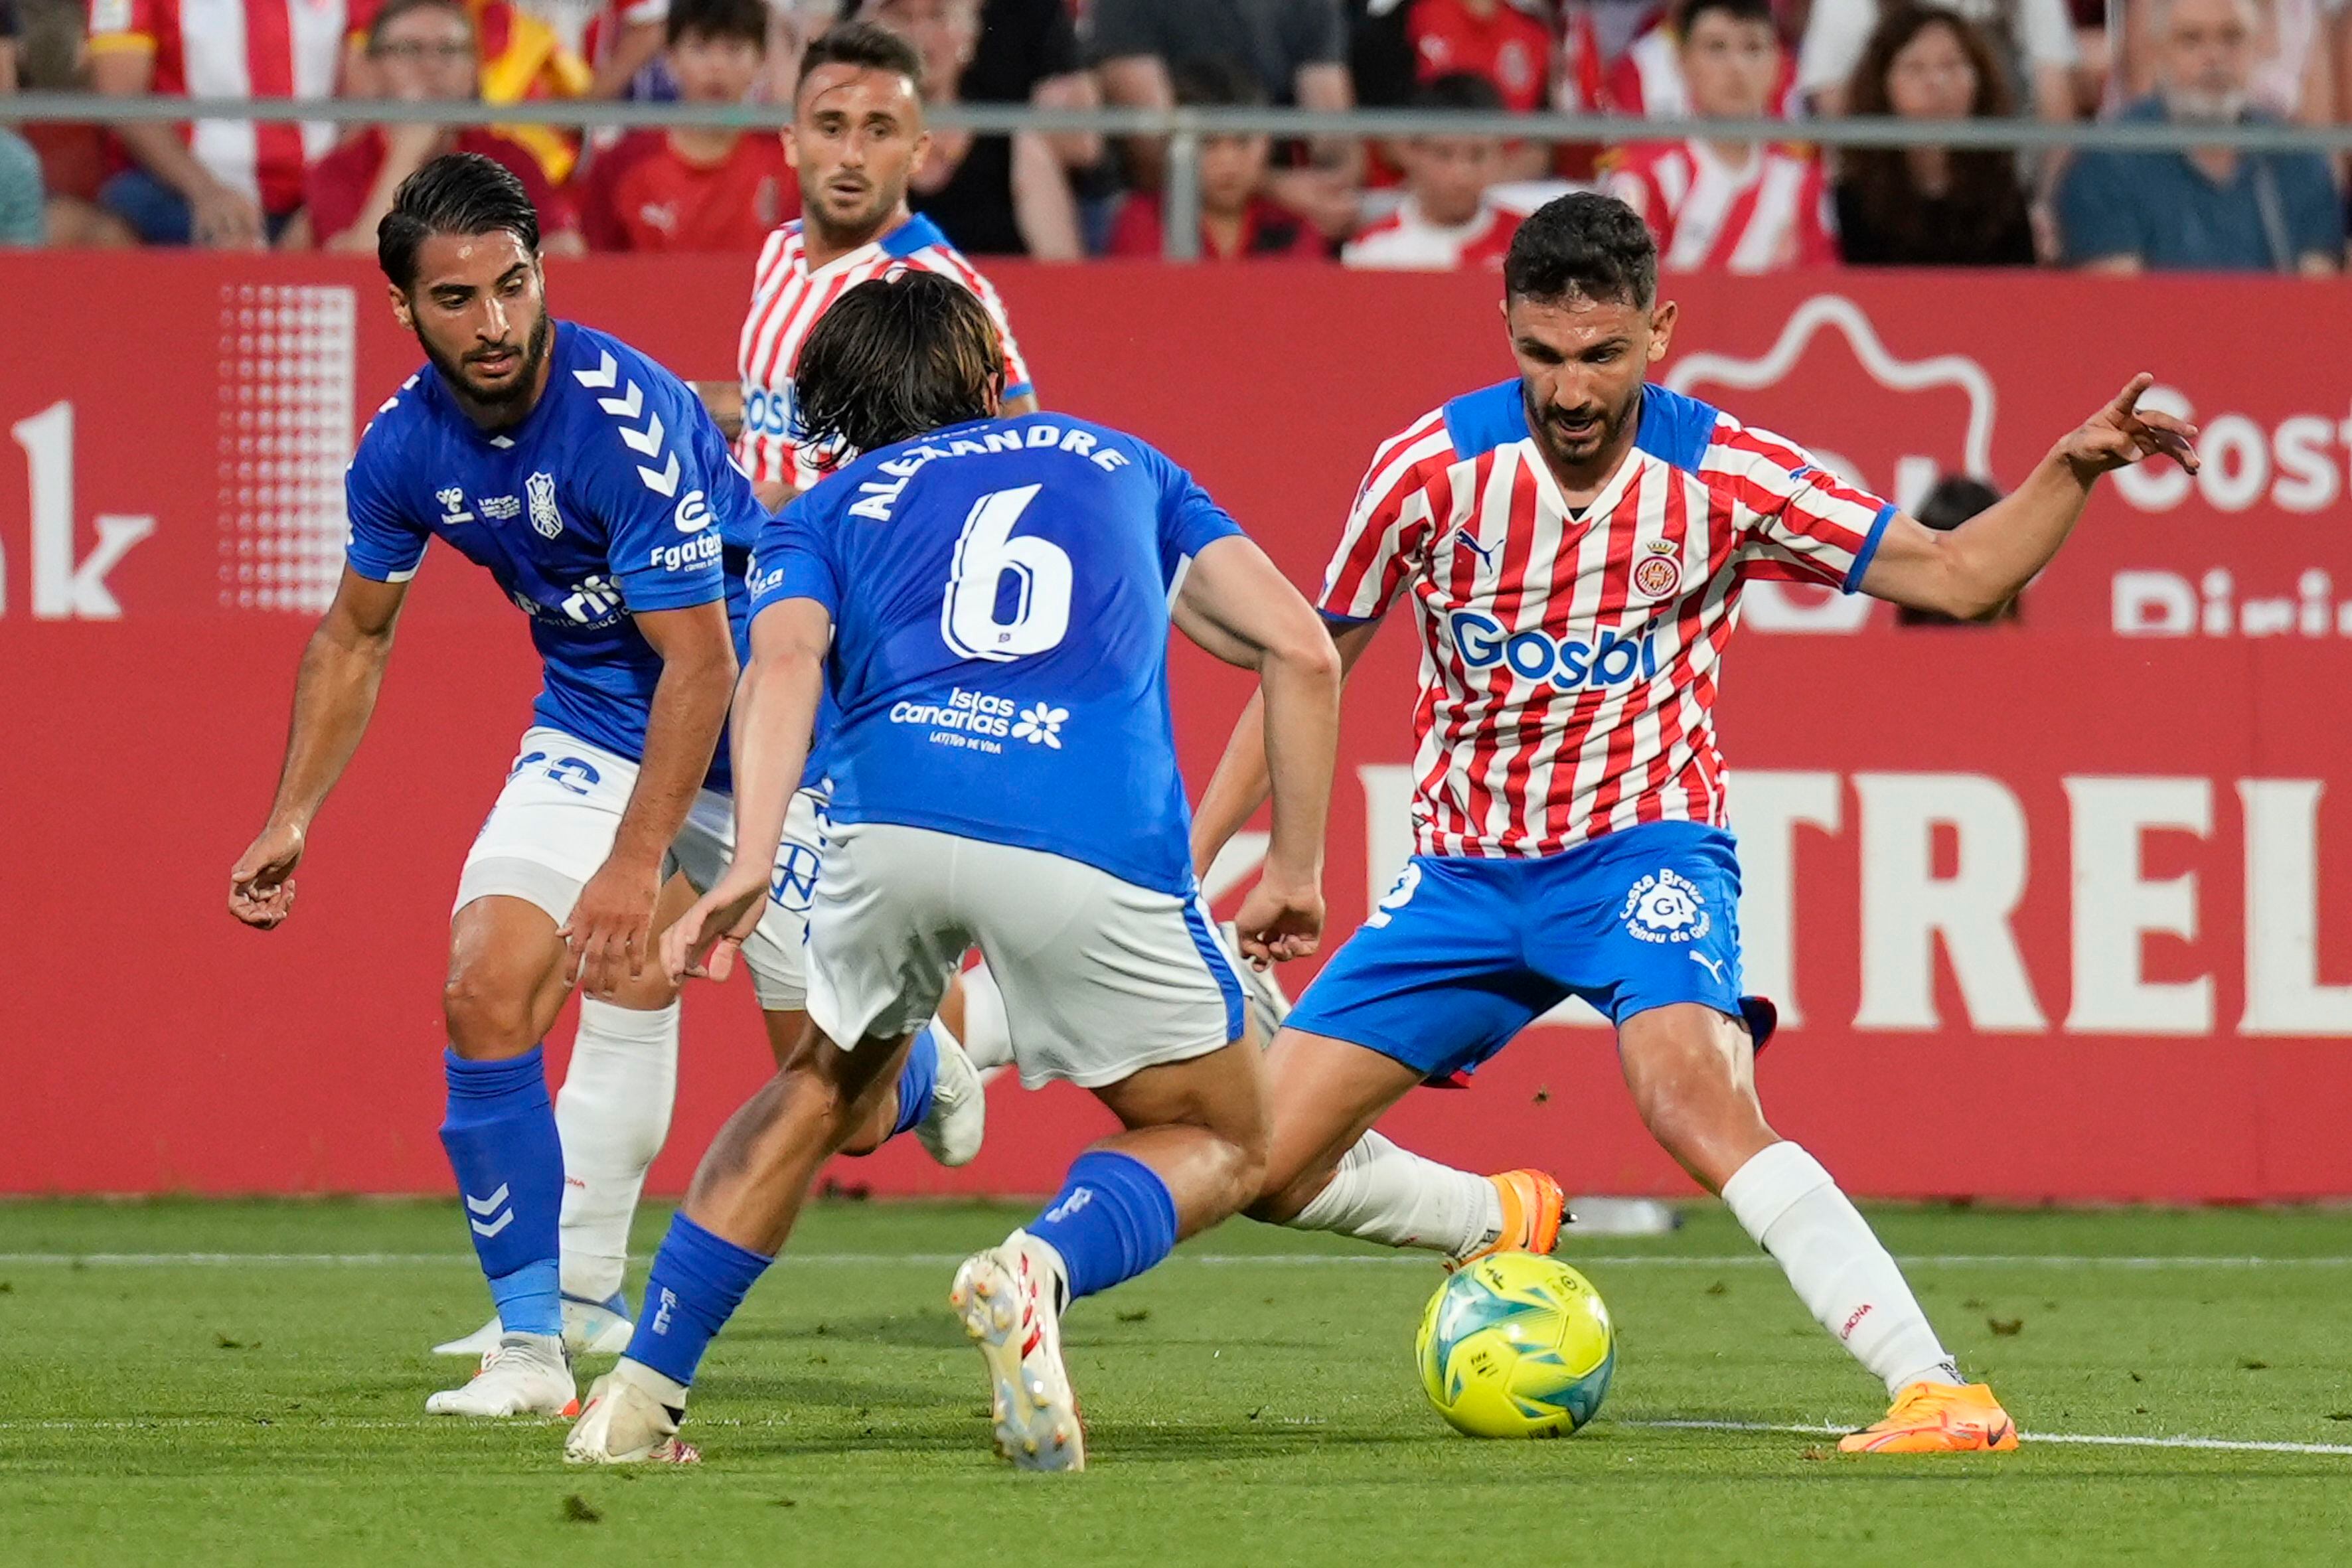 El centrocampista del Girona Iván Martín (derecha) juega un balón ante Alexandre Corredera, del Tenerife, durante el partido de ida de la final de ascenso a LaLiga Santander disputado el 11 de junio en el Estadio de Montilivi, en Girona.